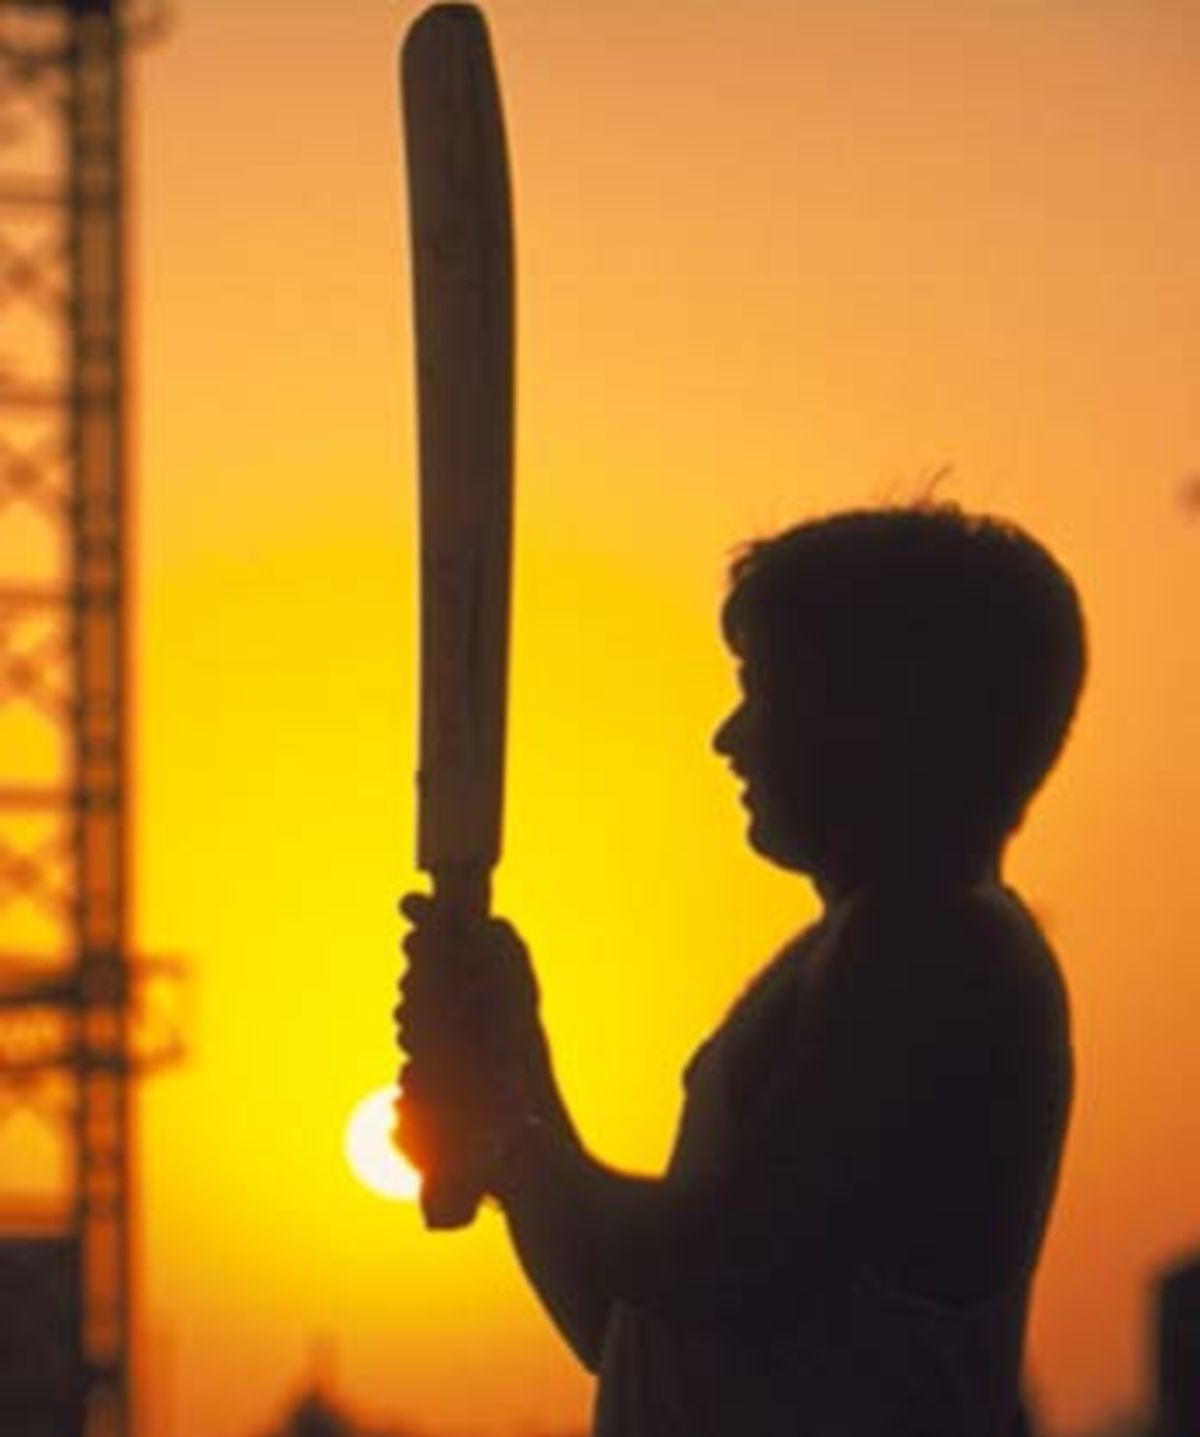 Twilight cricket in Mumbai, 2001